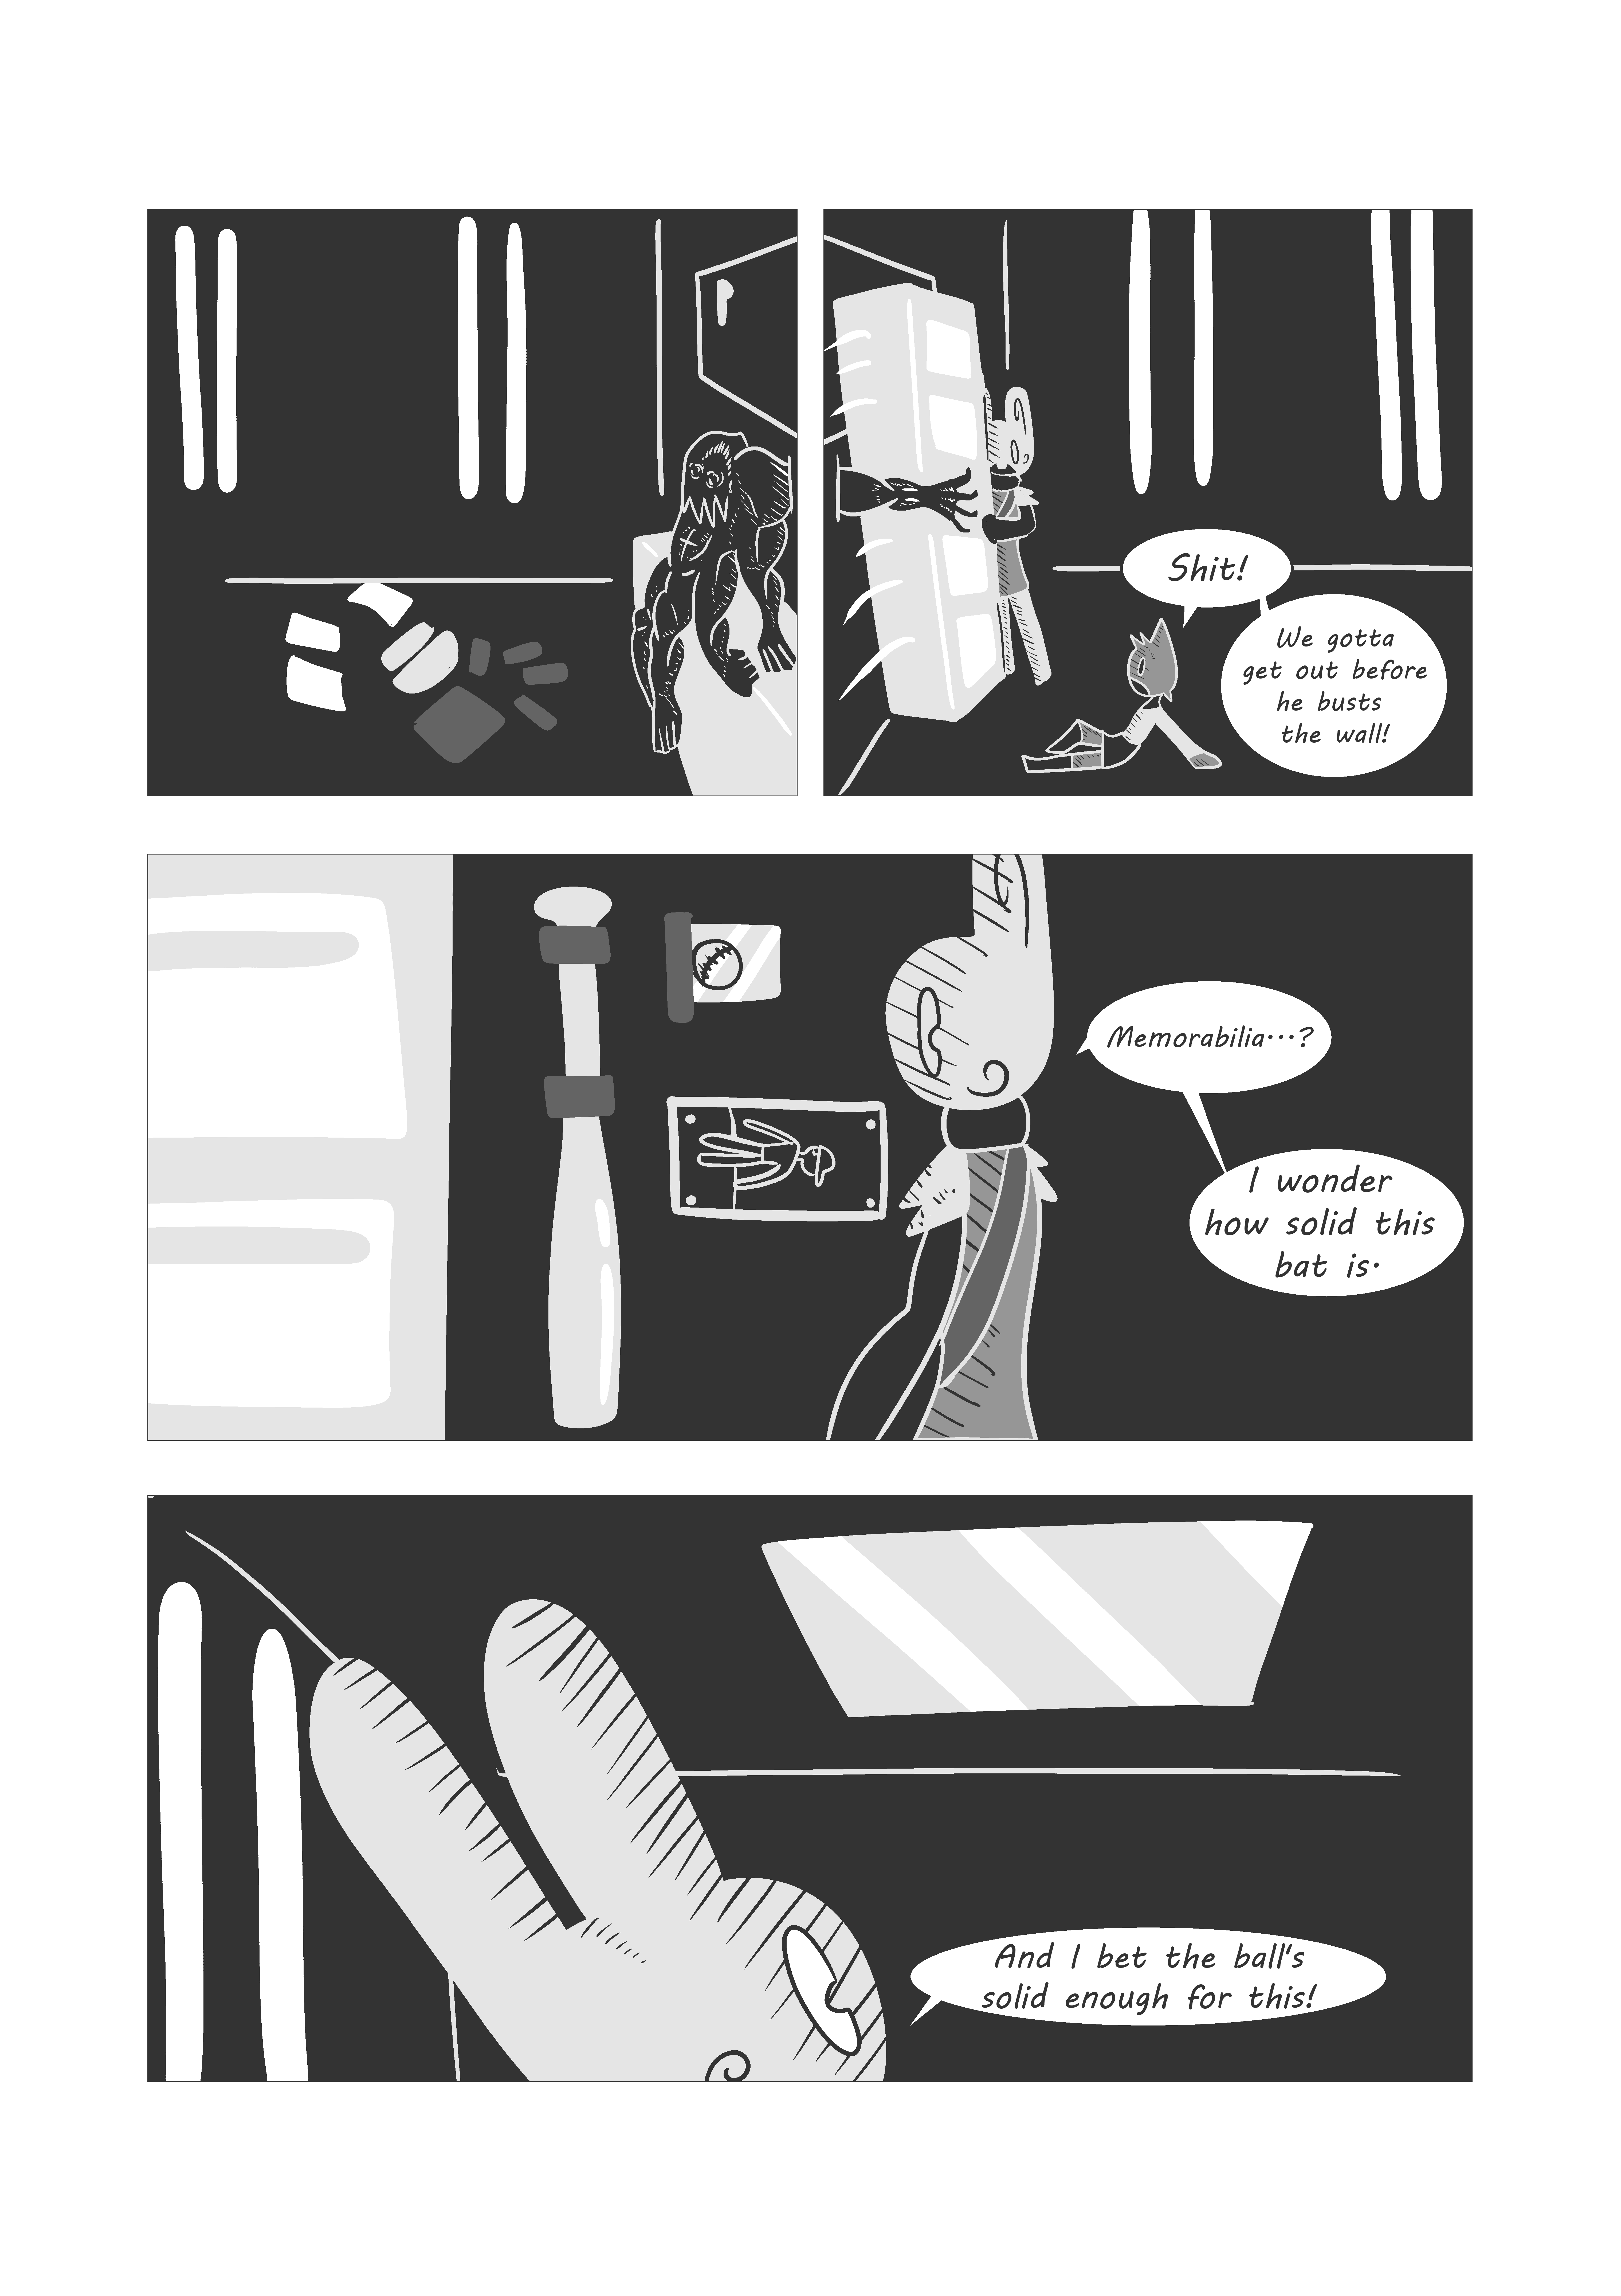 Page 110 : Memorabilia